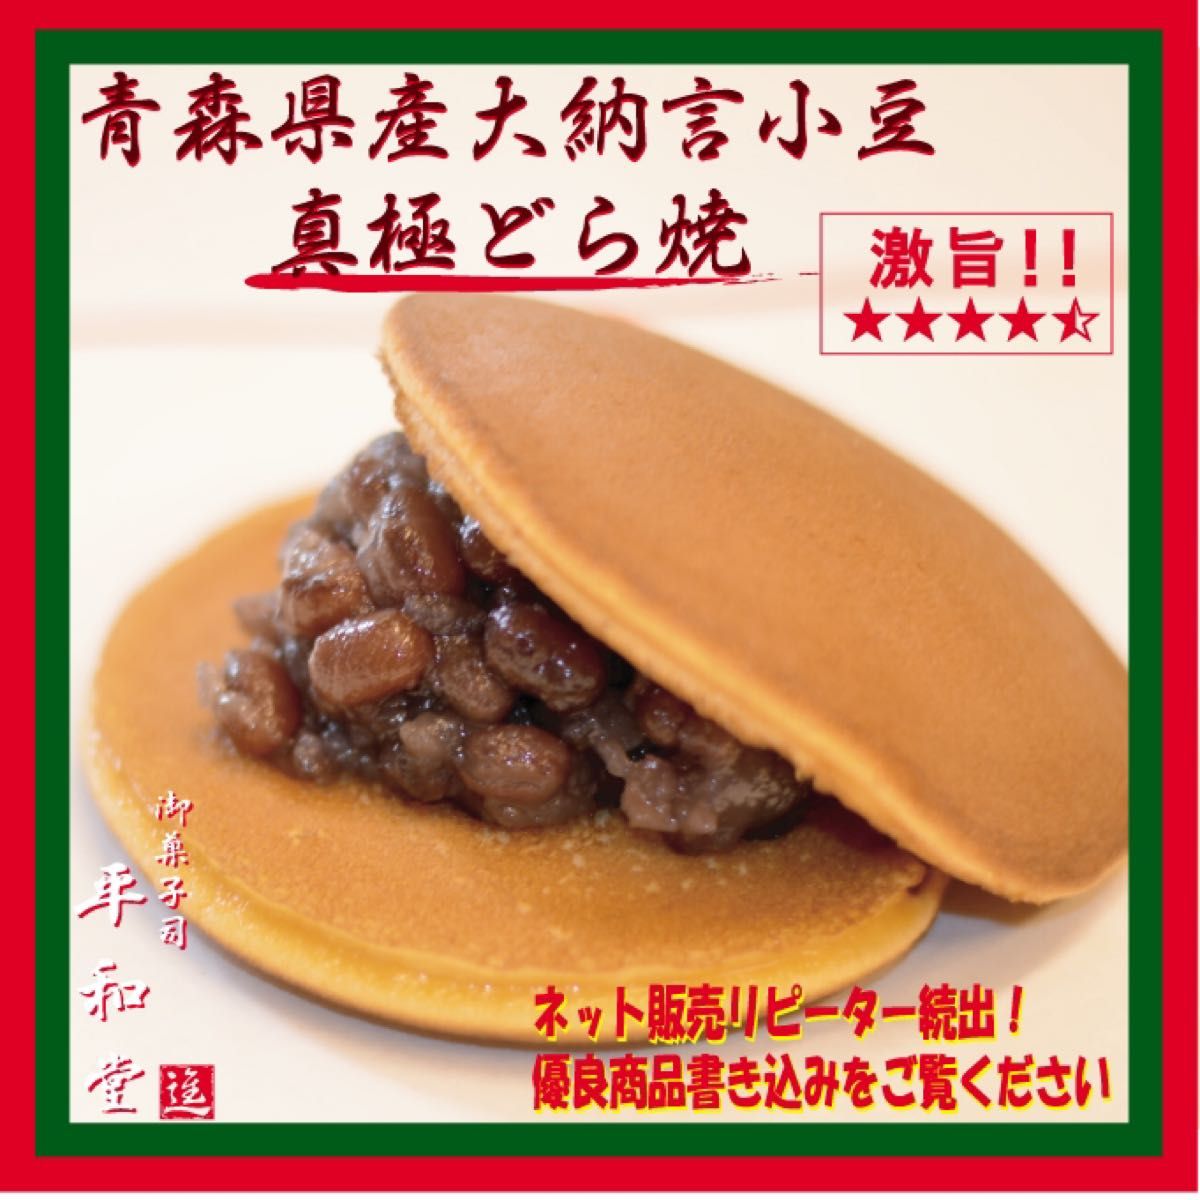 1-3青森県産大納言使用  真極どら焼き 4個入り  手作り和菓子